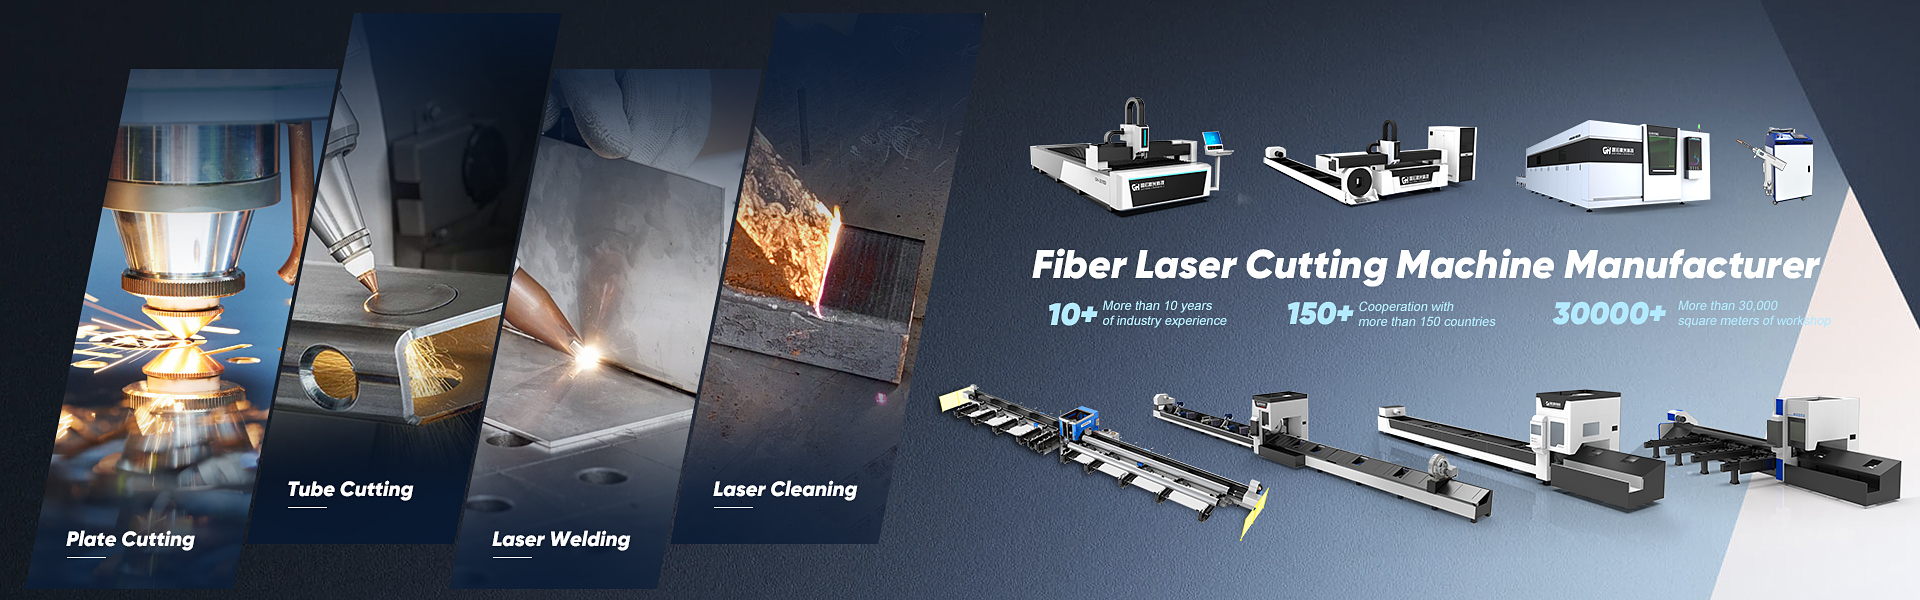 fiber-laser-cutting-machines